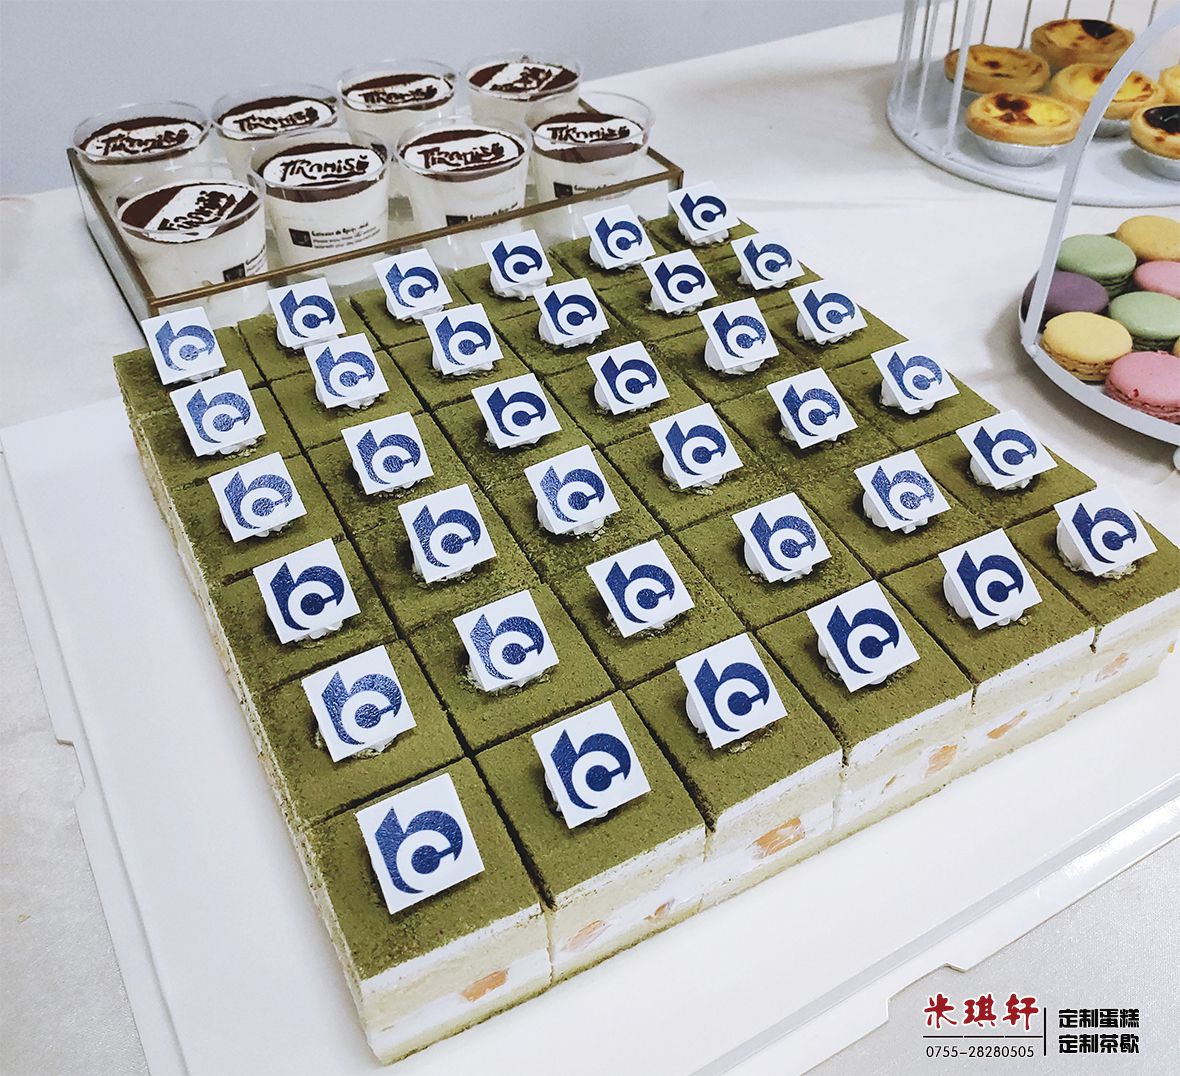 为交通银行深圳分行定制的15周年蛋糕茶歇甜品台(图6)